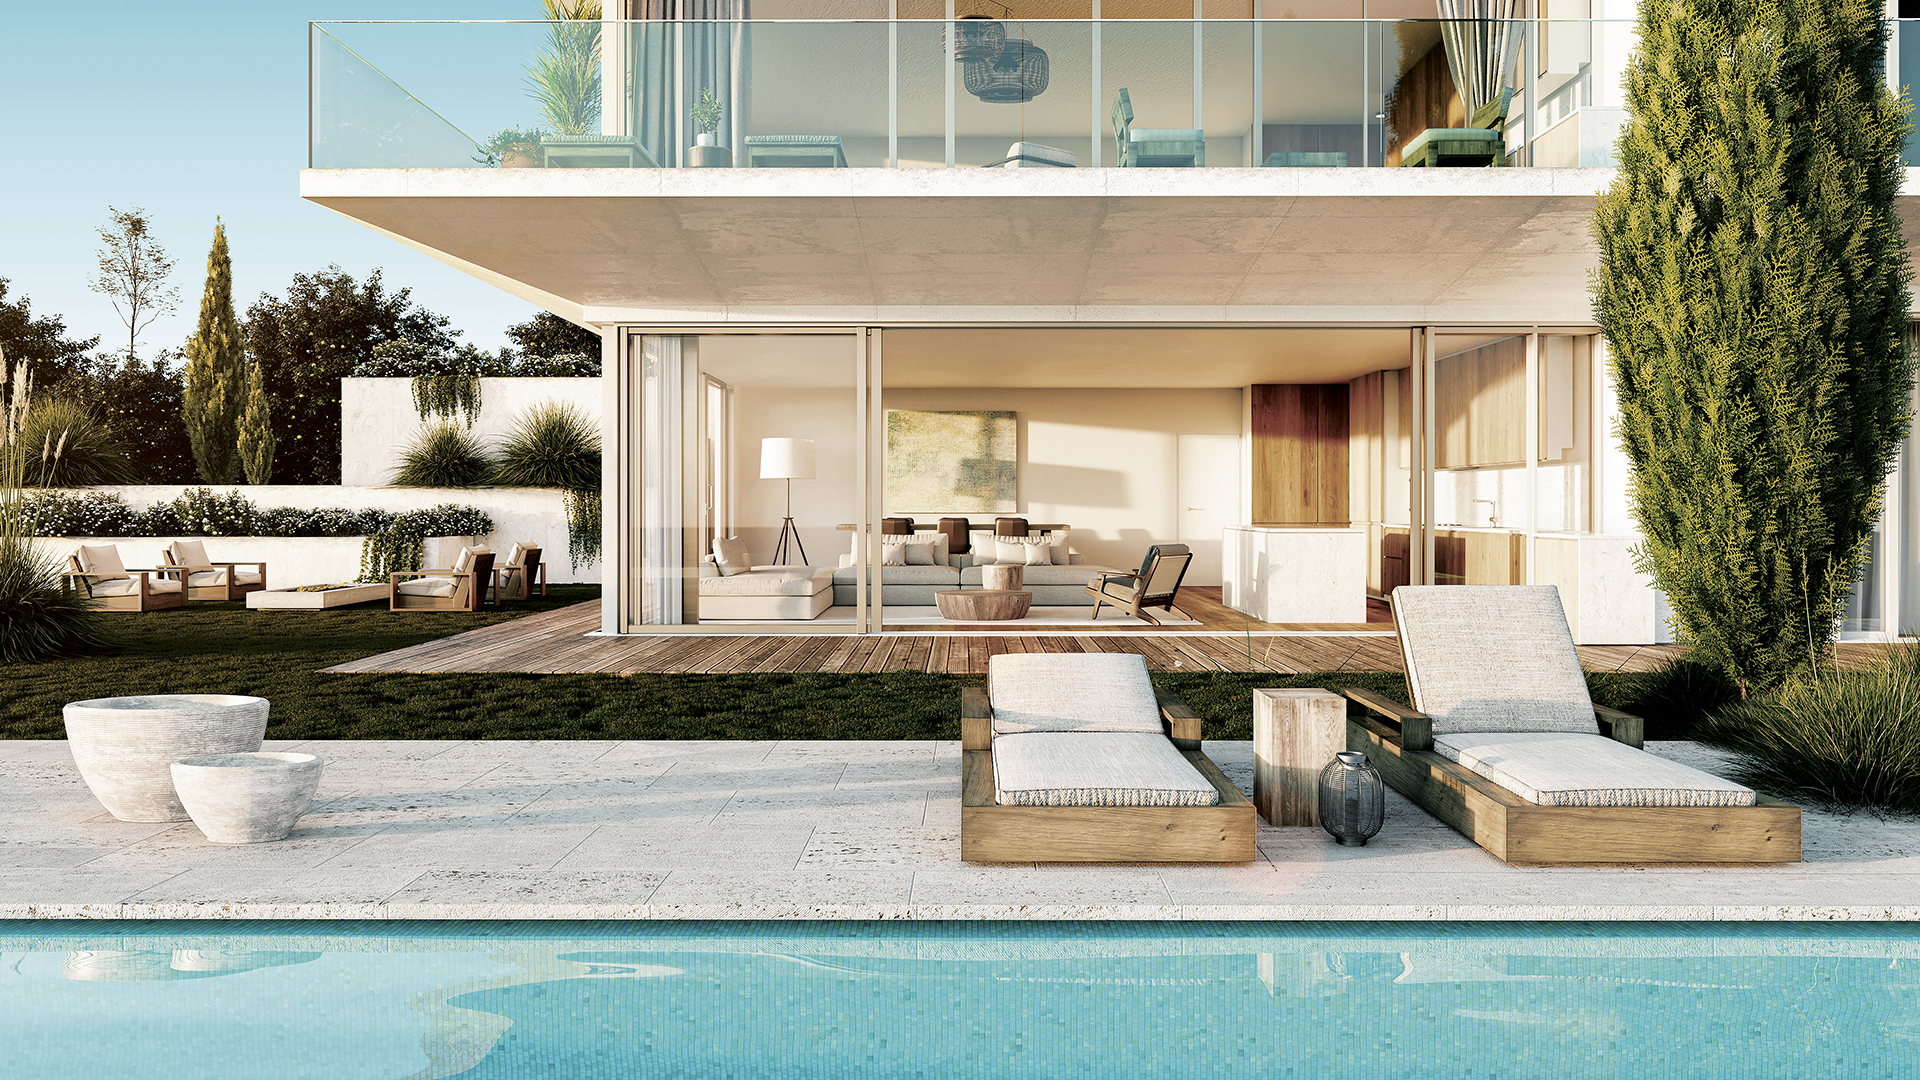 EN CONSTRUCTION - Appartements de 2 chambres avec terrasse, piscine commune et vue sur la mer Carvoeiro | LG2101 En construction, spacieux appartements de 2 chambres avec terrasse ou jardin à proximité des commodités à la périphérie de Carvoeiro. Toutes les terrasses offrent une vue magnifique sur la côte de l'Algarve.